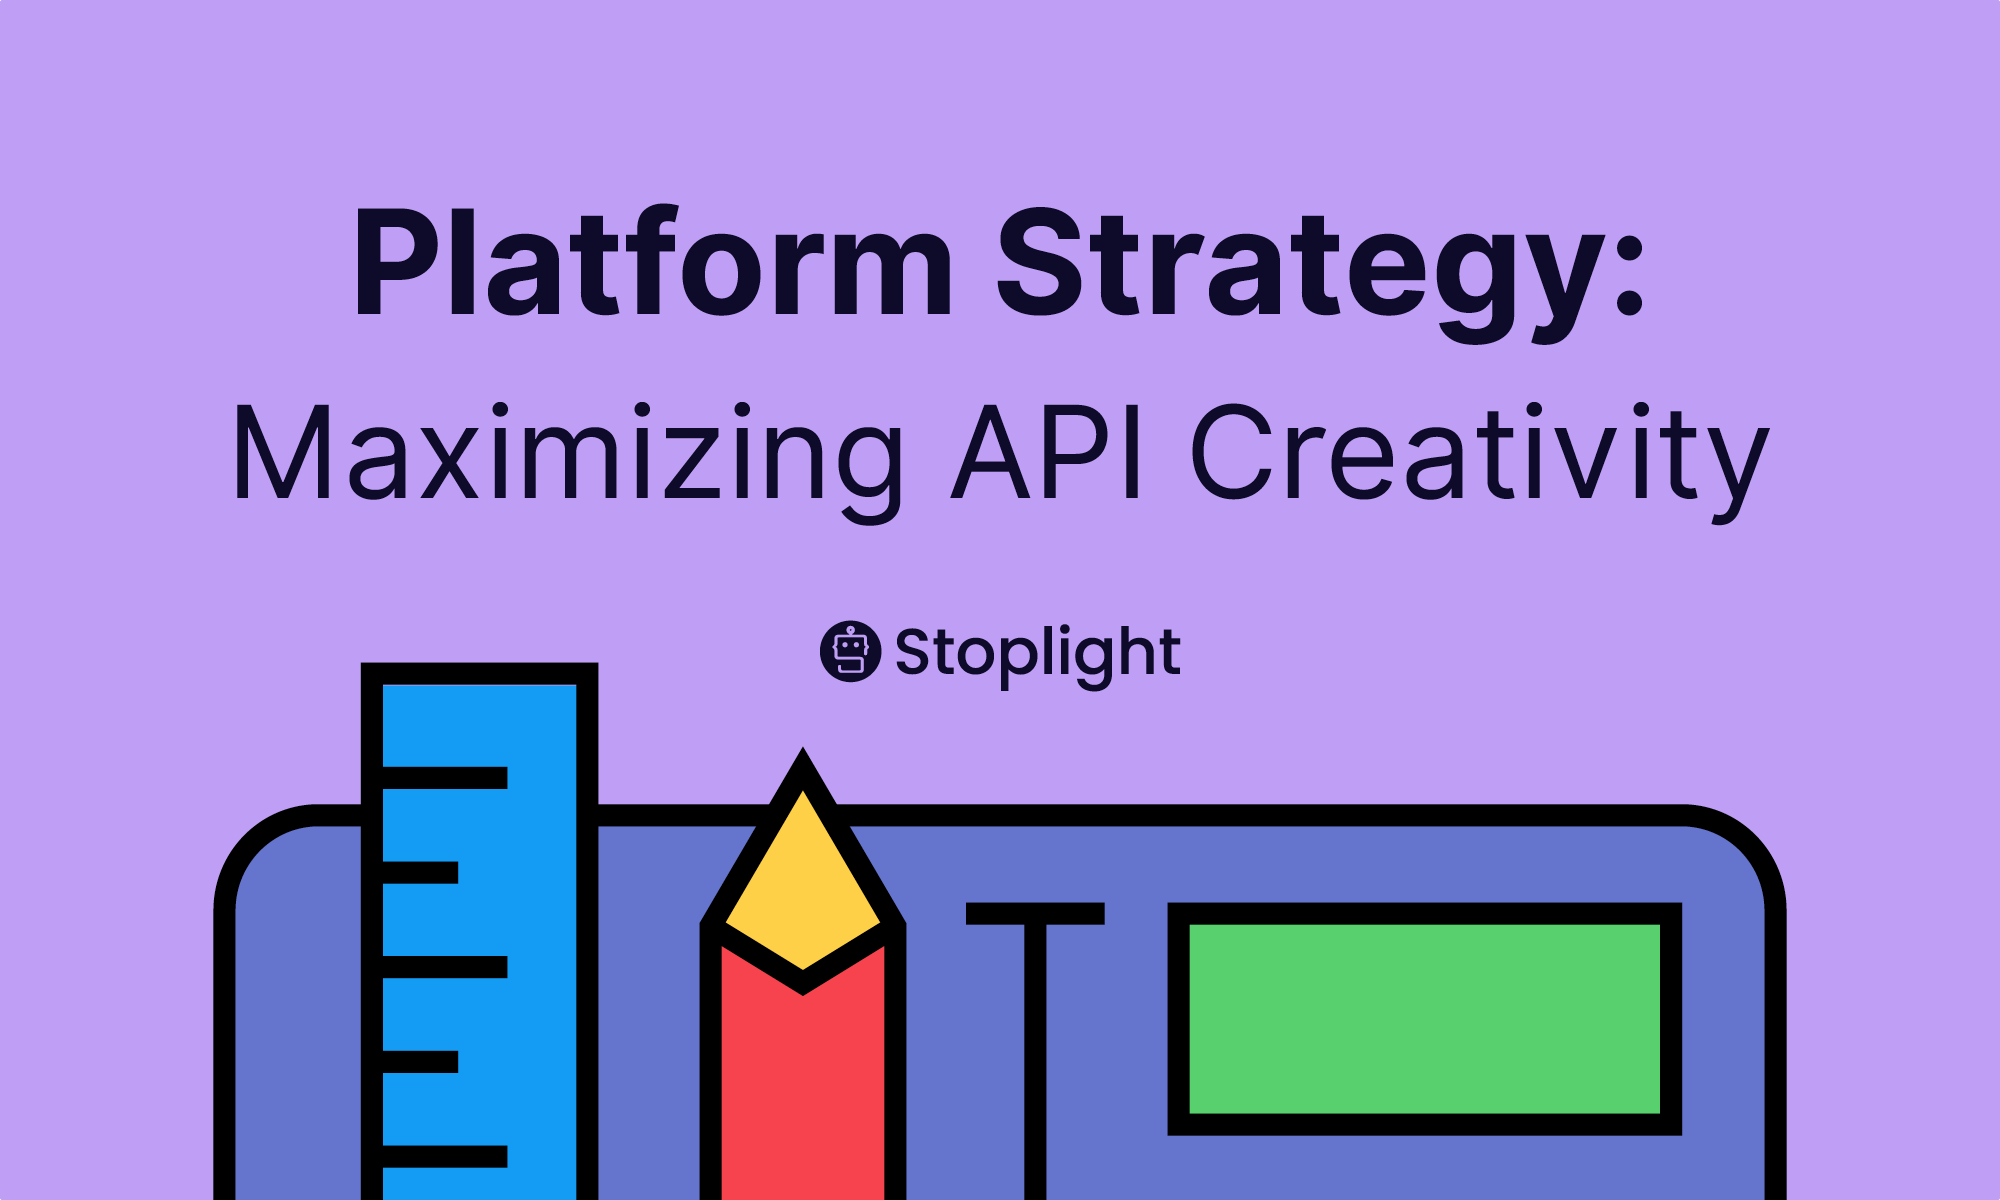 Platform Strategy: Maximizing API Creativity